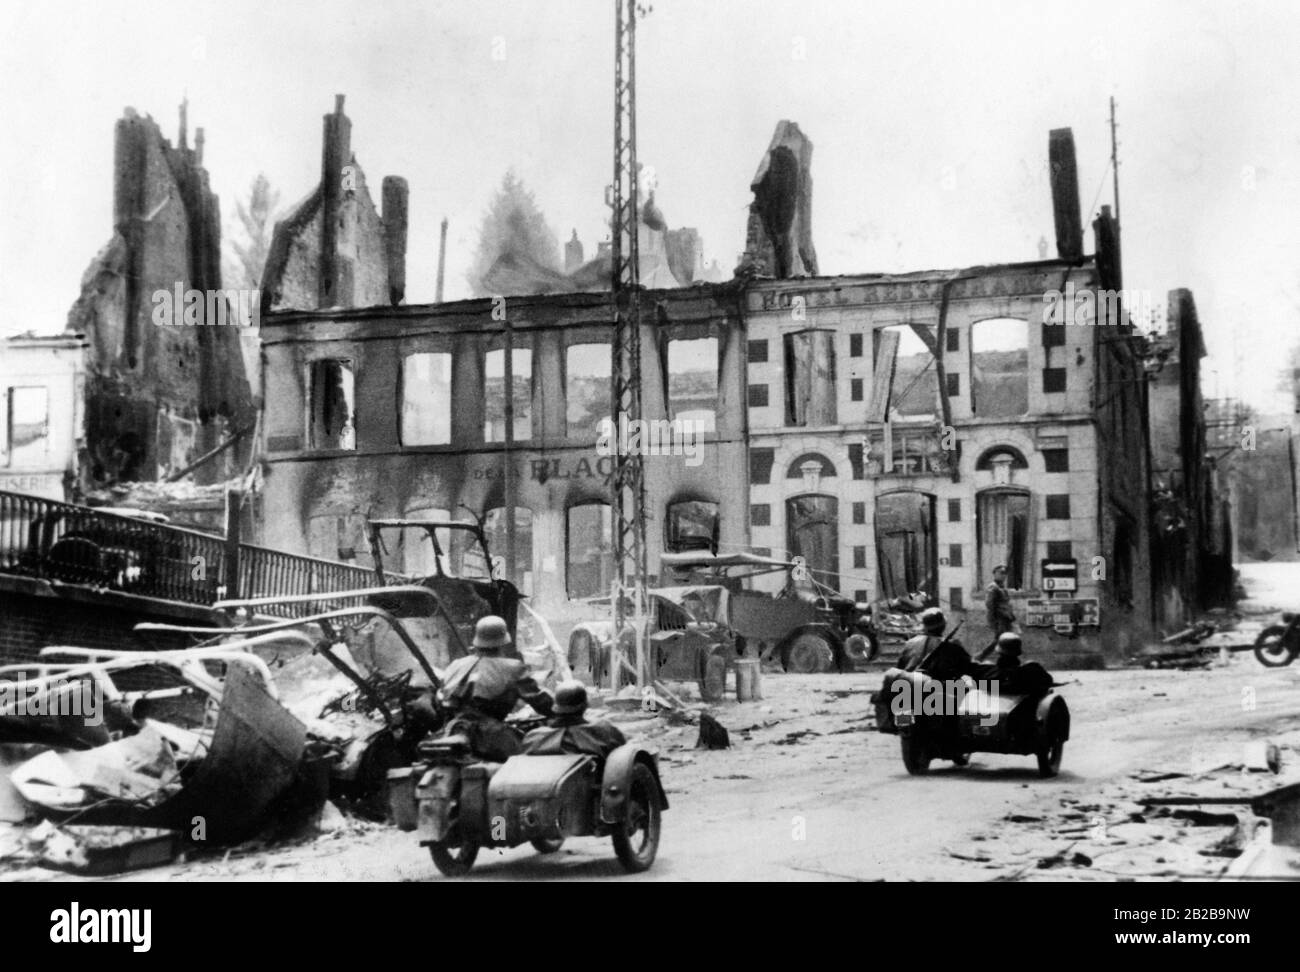 Troupes motorisées avançant dans une ville française détruite. En arrière-plan se trouve un bâtiment détruit au cours de la seconde Guerre mondiale. Banque D'Images